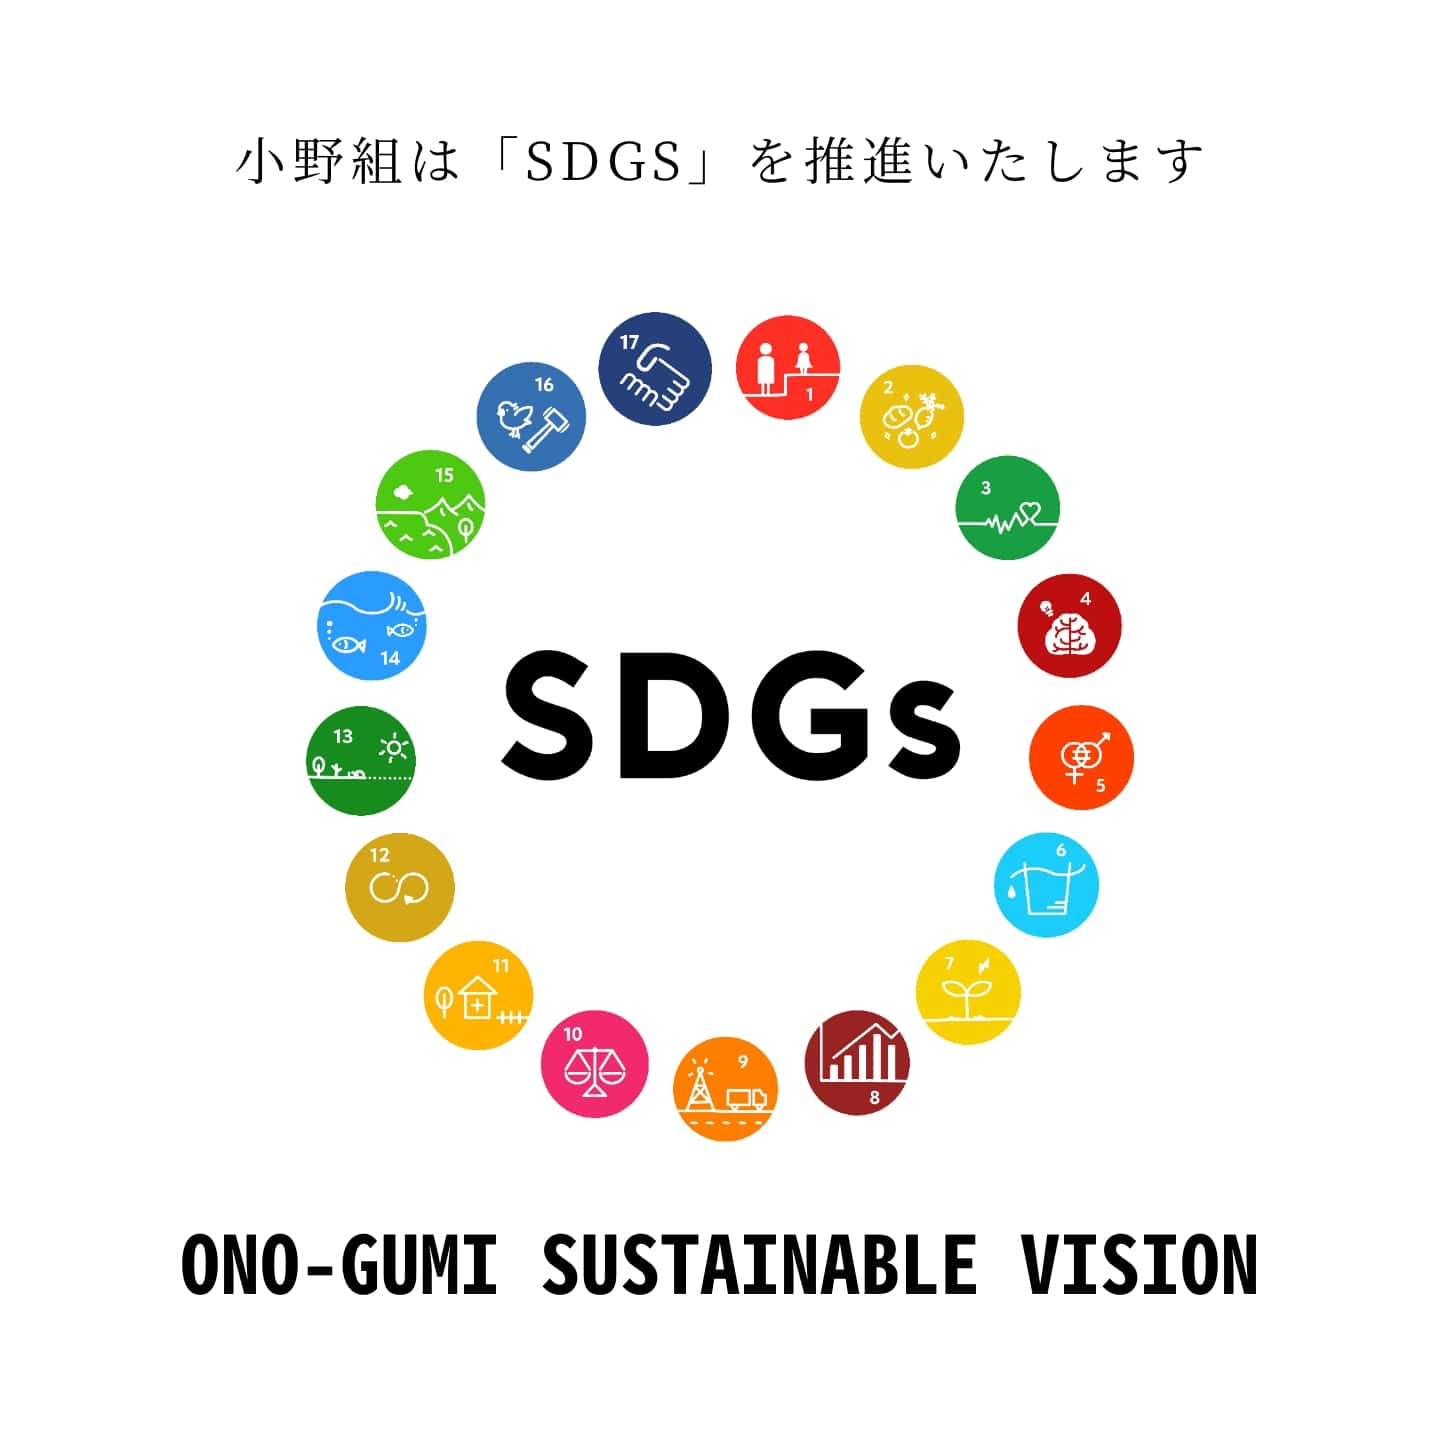 小野組はSDGsを推進いたします。